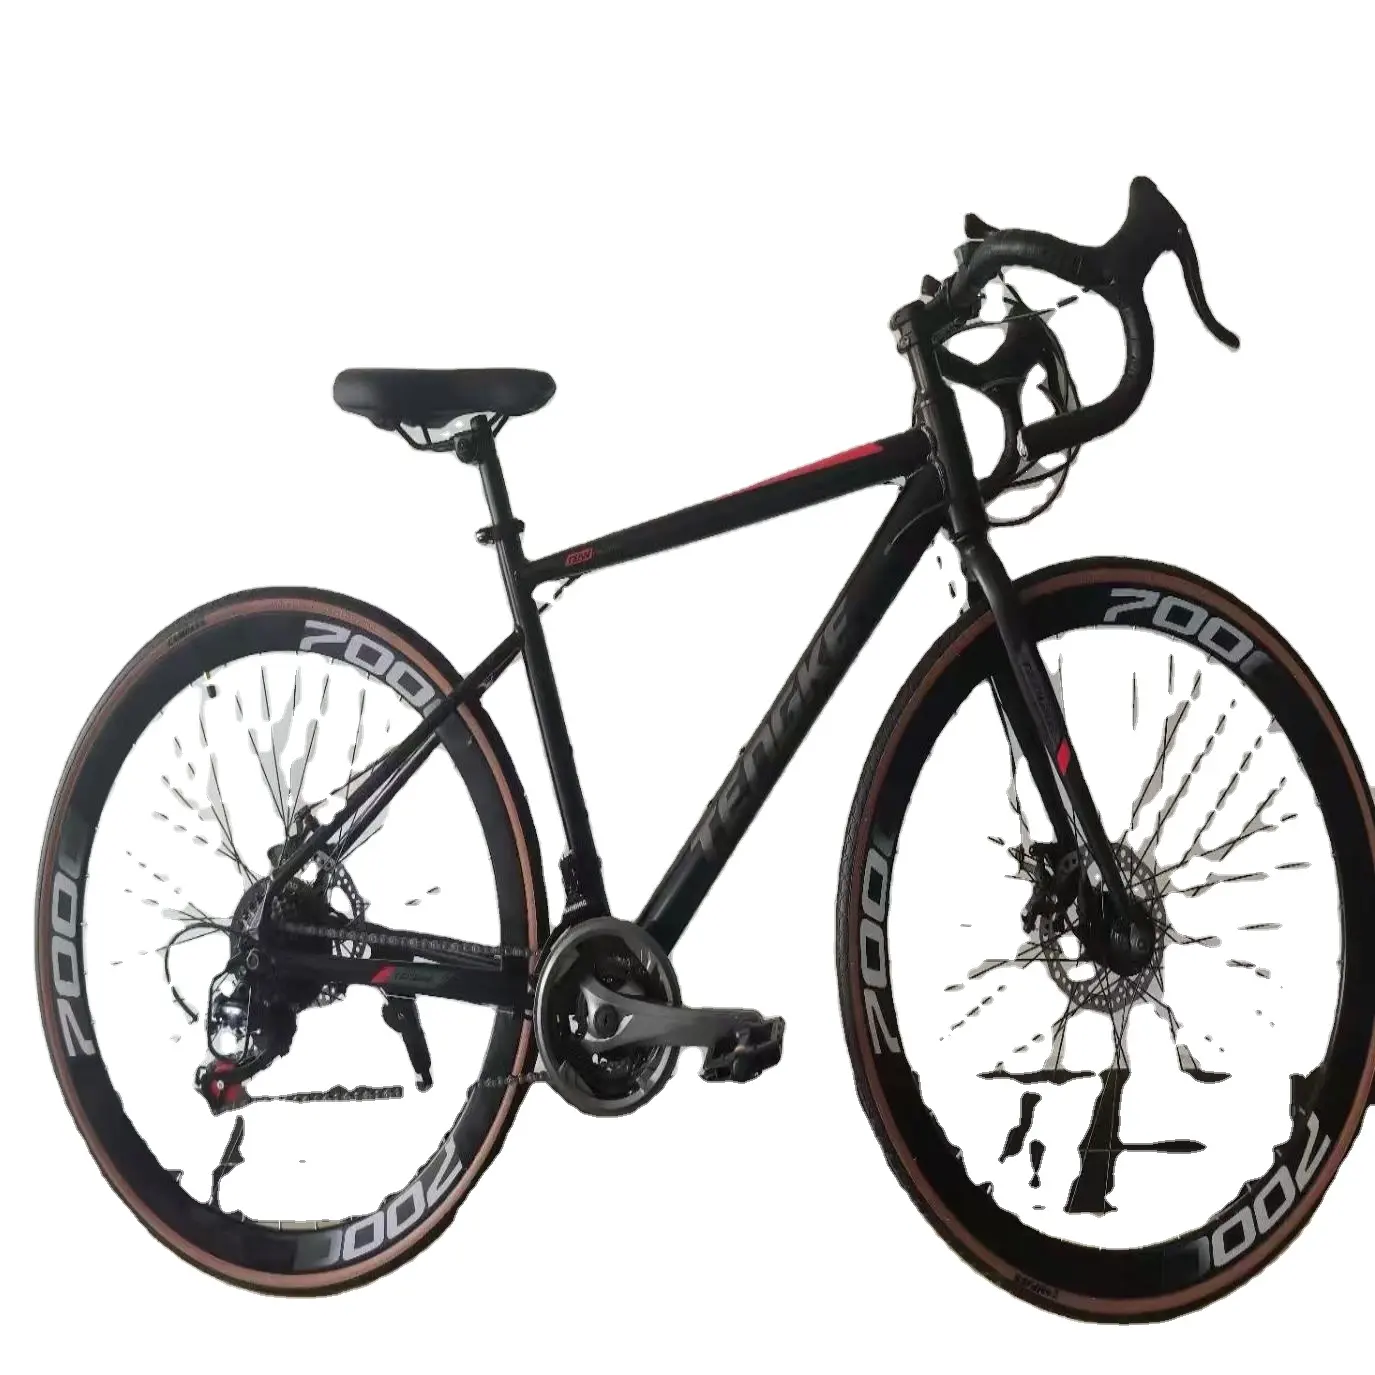 Popüler satış yüksek tam karbon çelik çerçeve yol bisikleti jantlar 700c lastik fabrika fiyatları